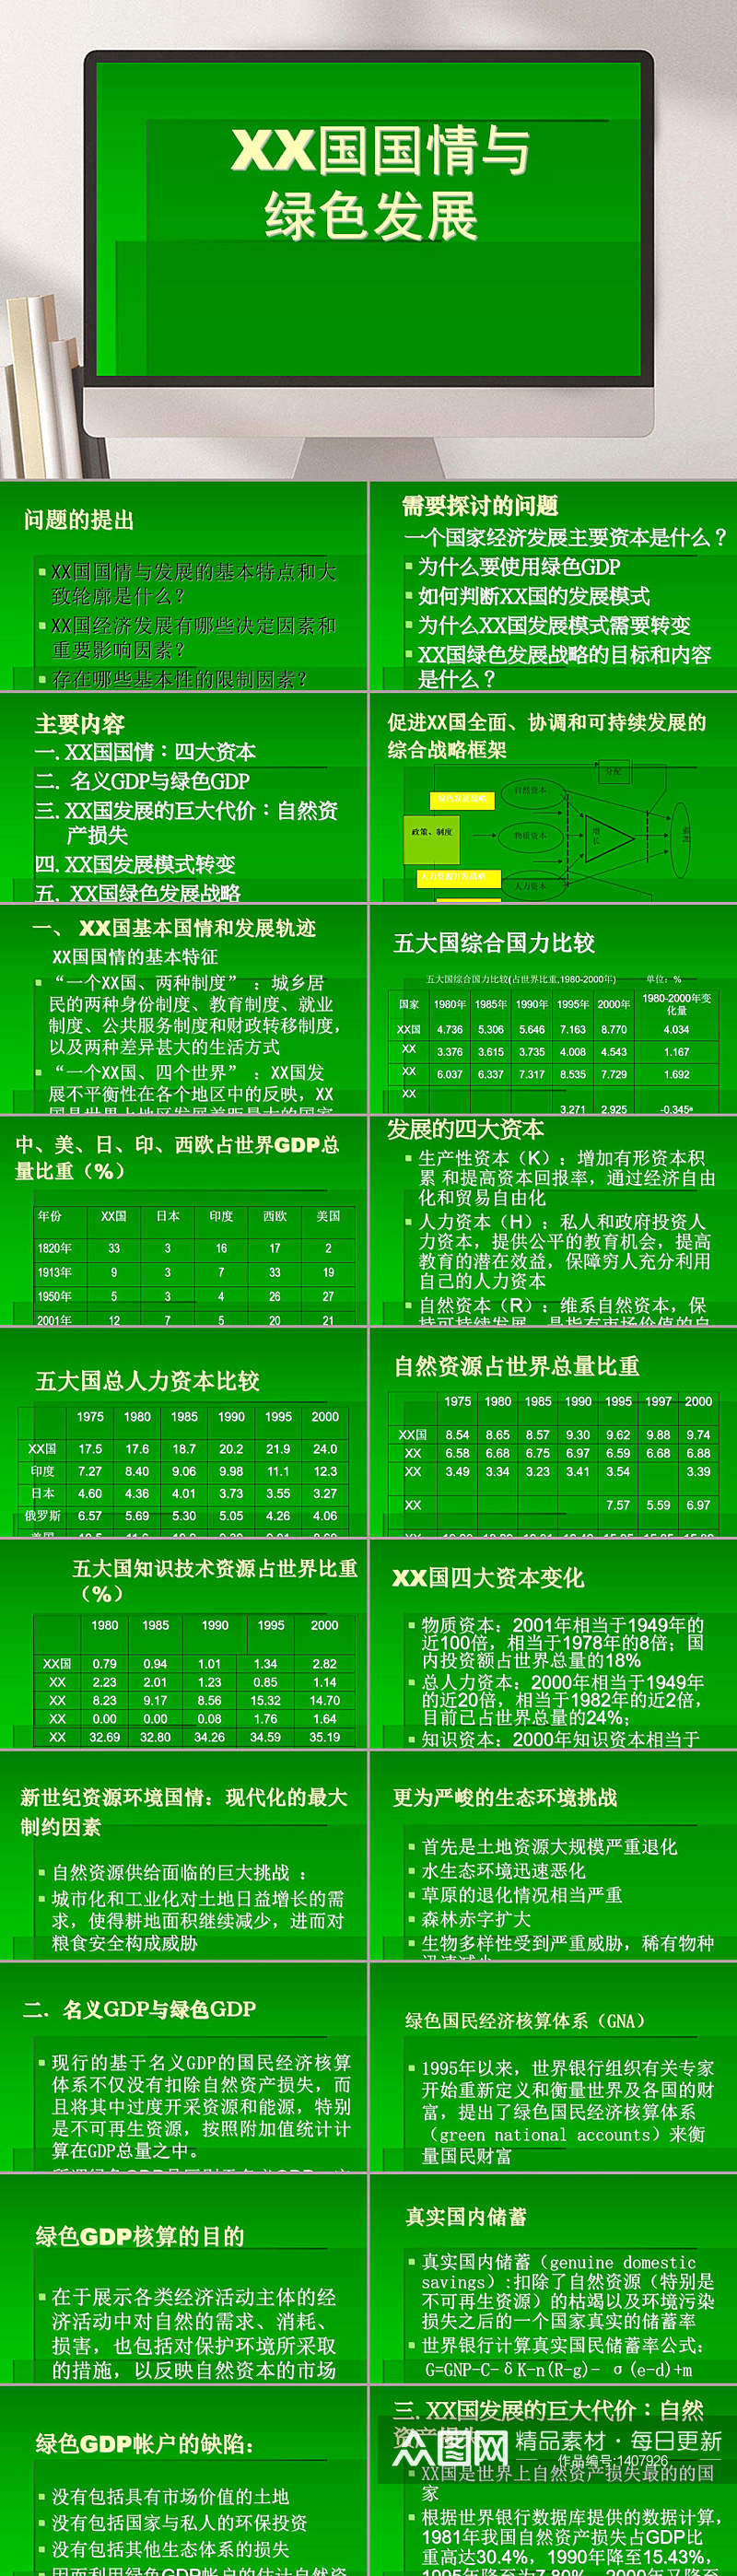 中国国情与绿色发展PPT模板素材